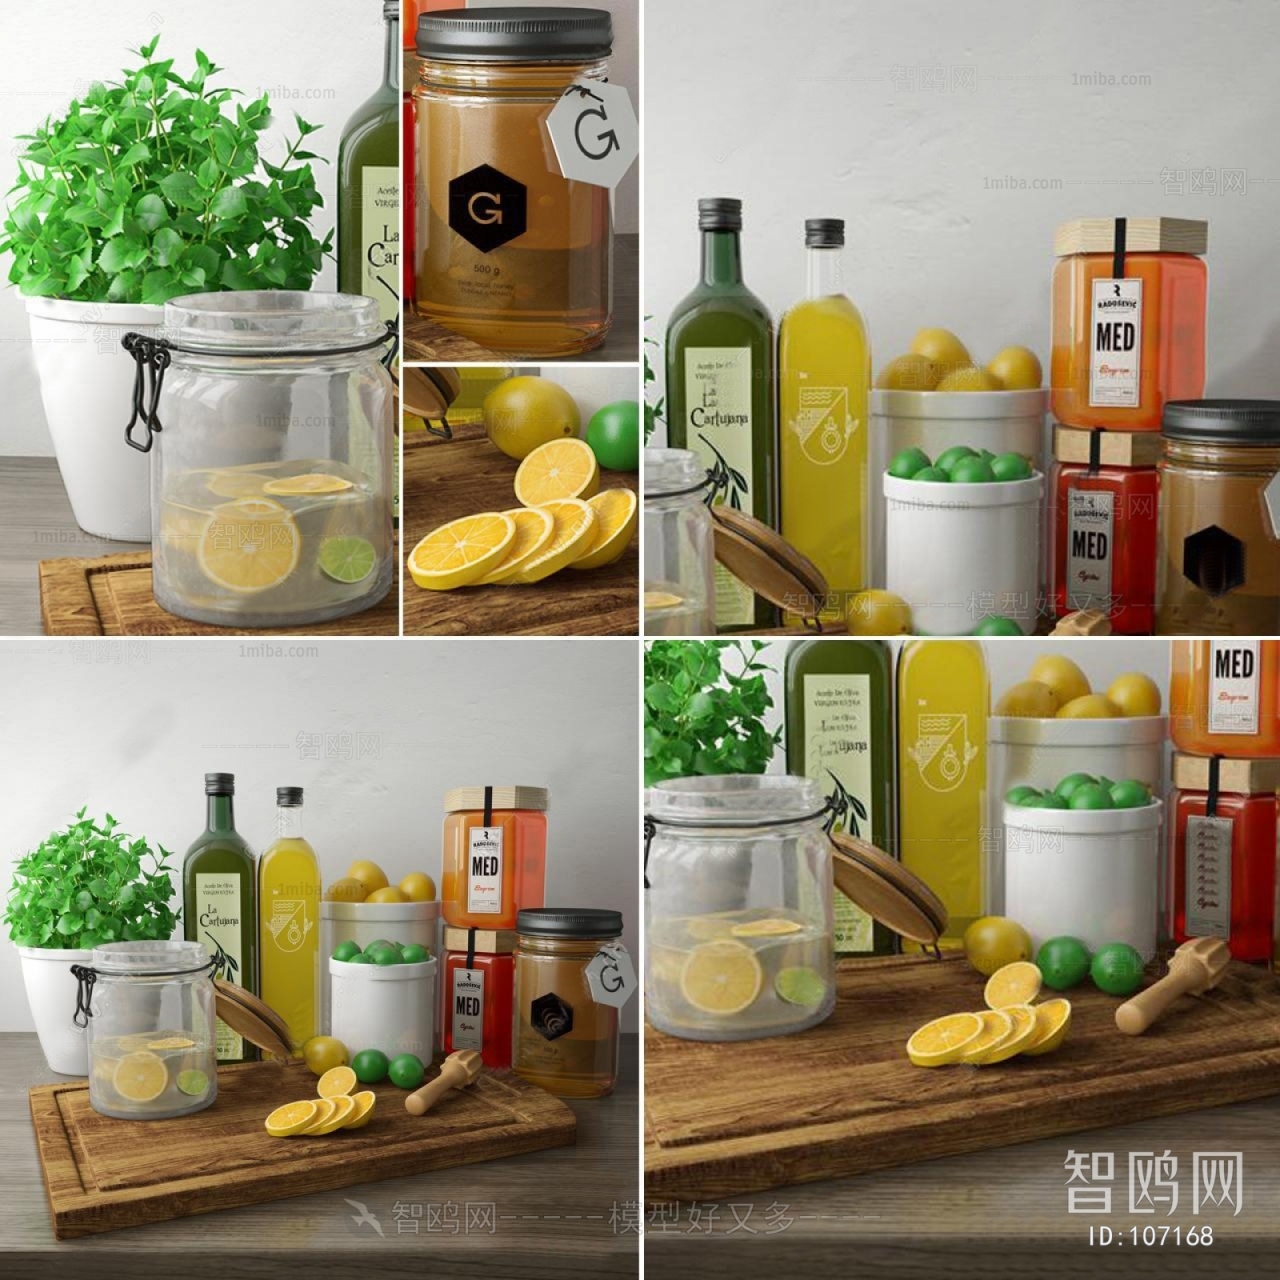 Modern Food/vegetables/fruit